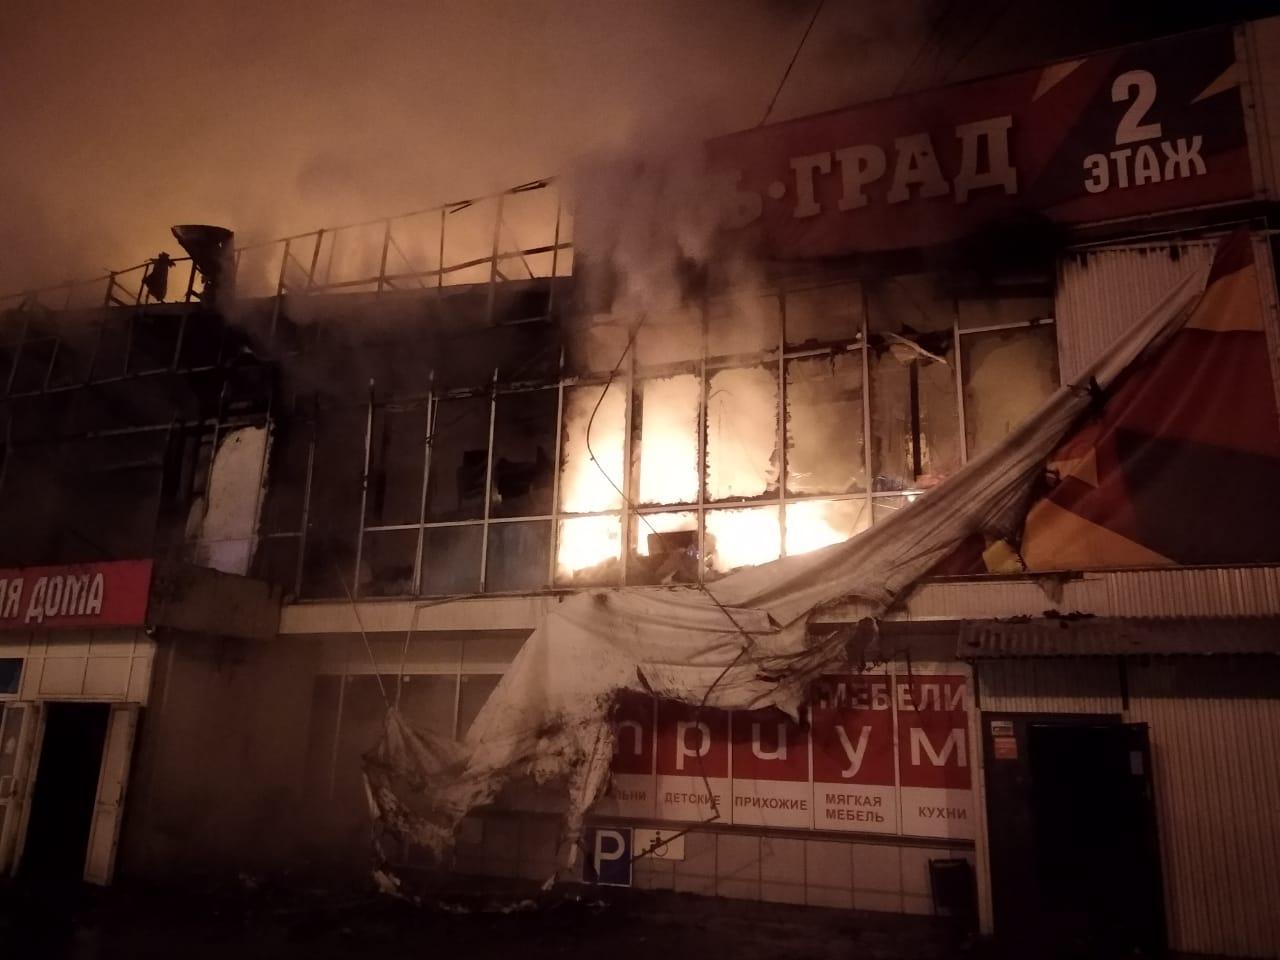 Мебельный центр сгорел на улице Сергеева в Иркутске. Фото и видео